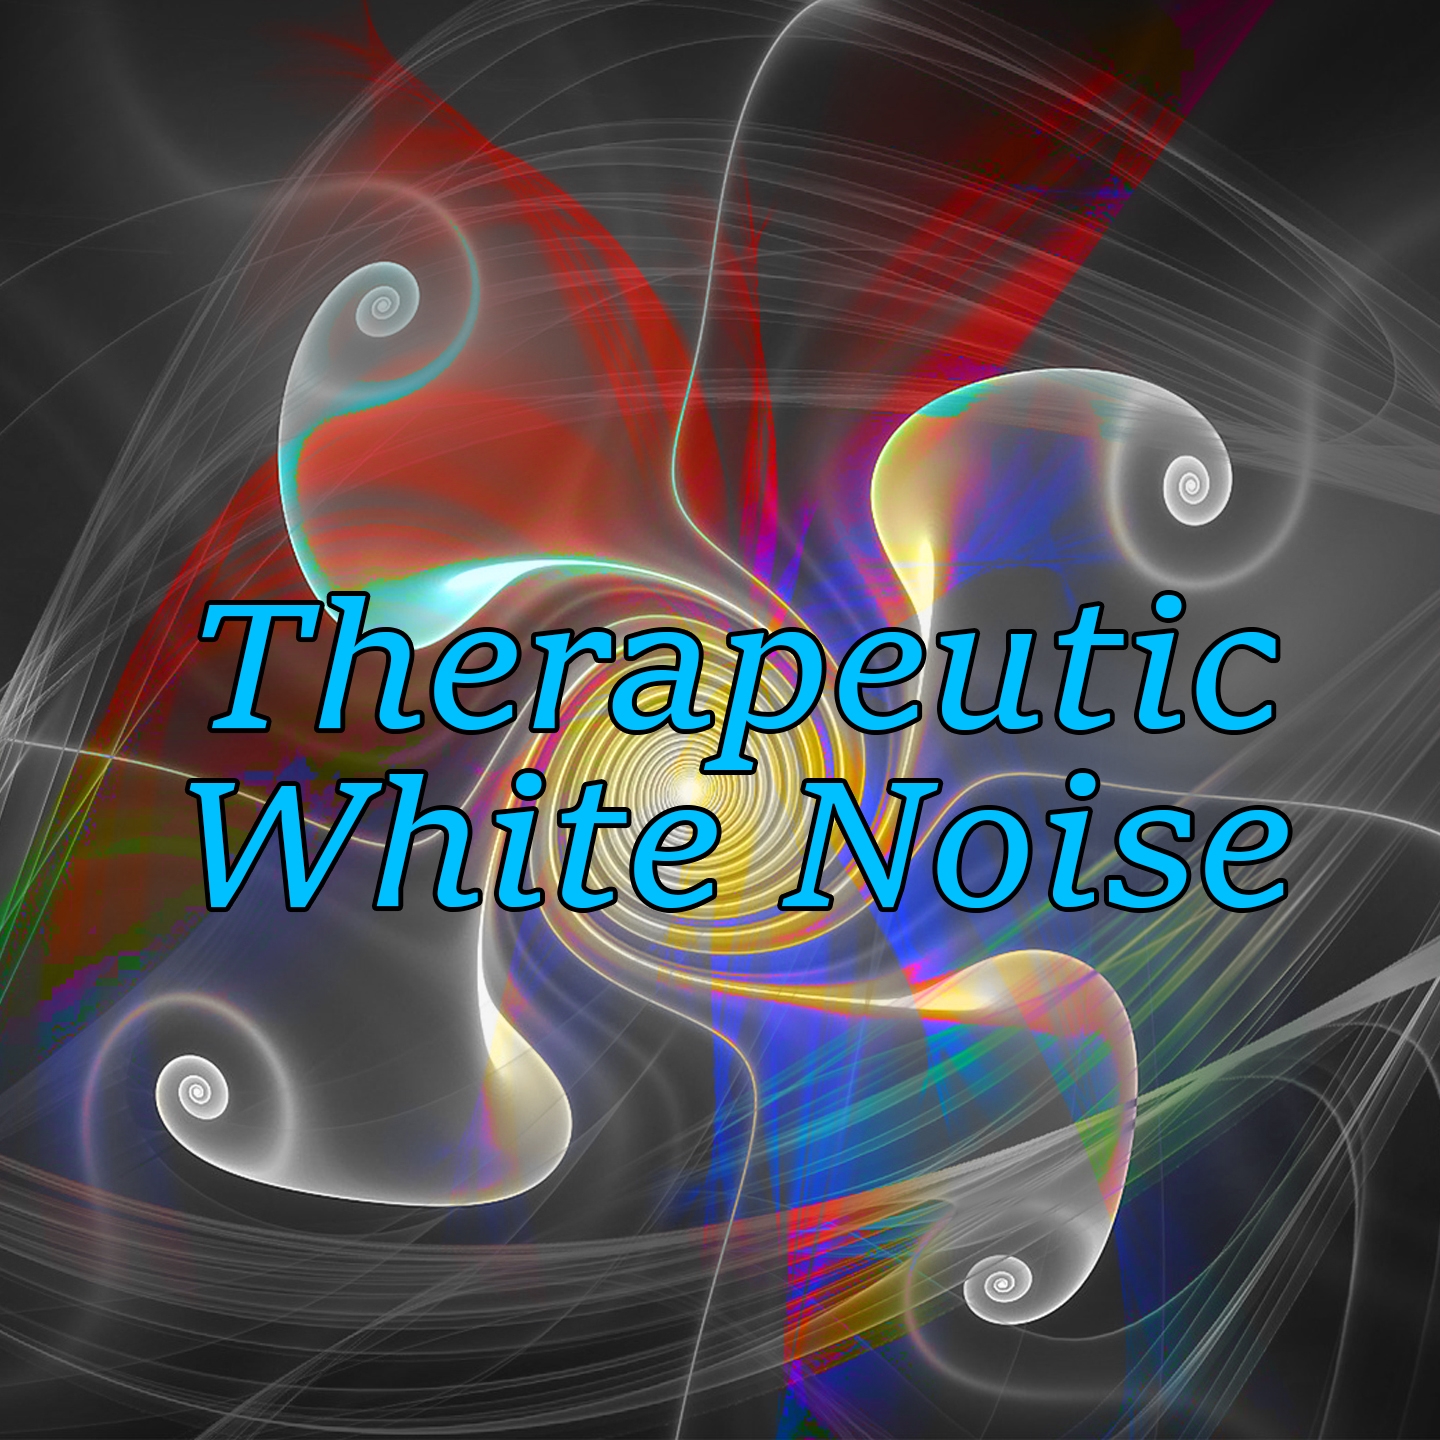 Therapeutic White Noise